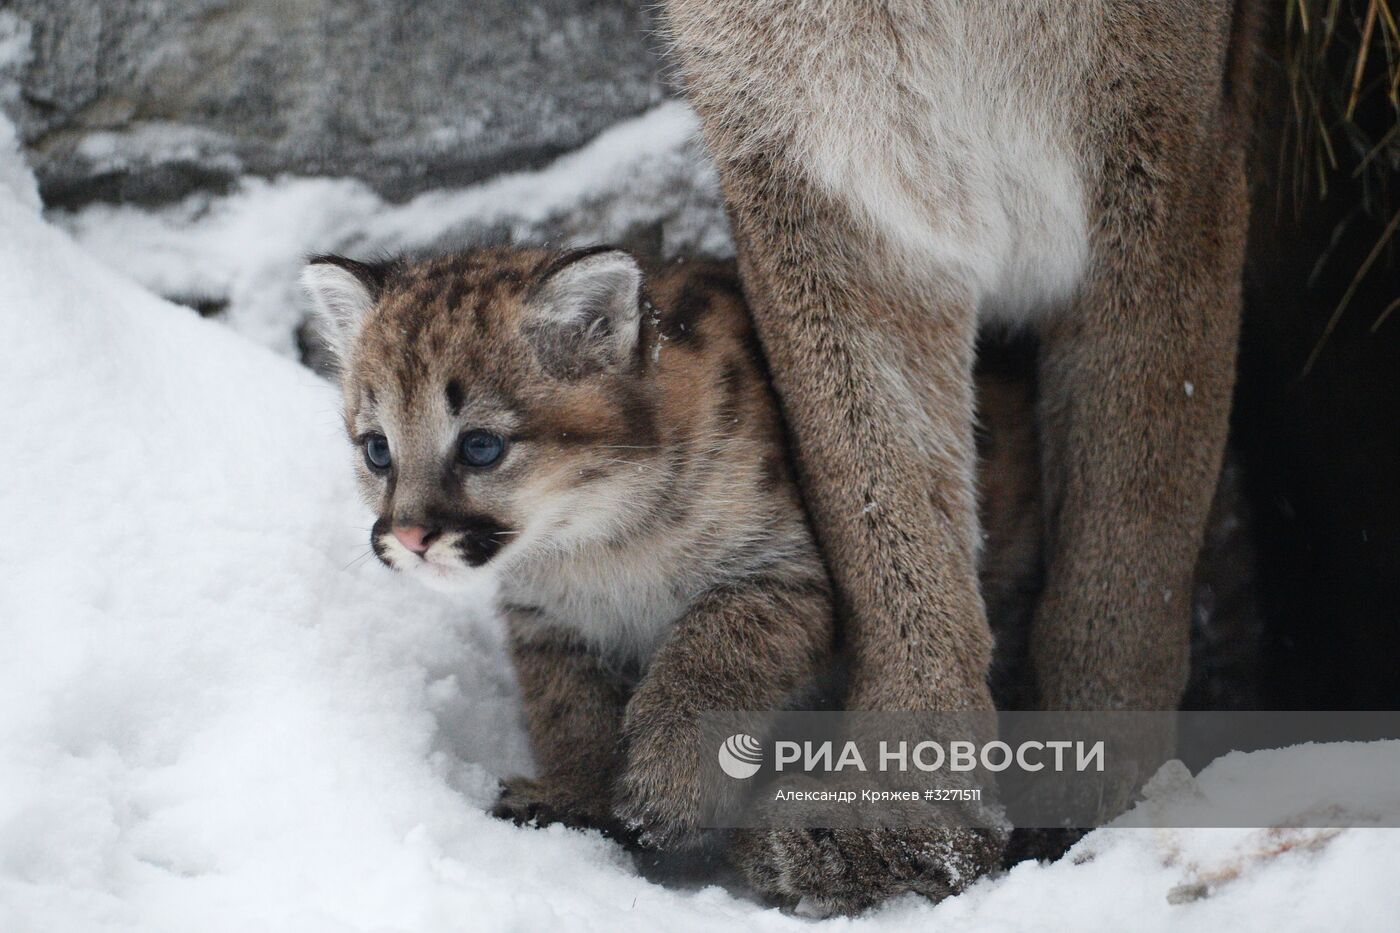 Детеныши пумы появились в Новосибирском зоопарке